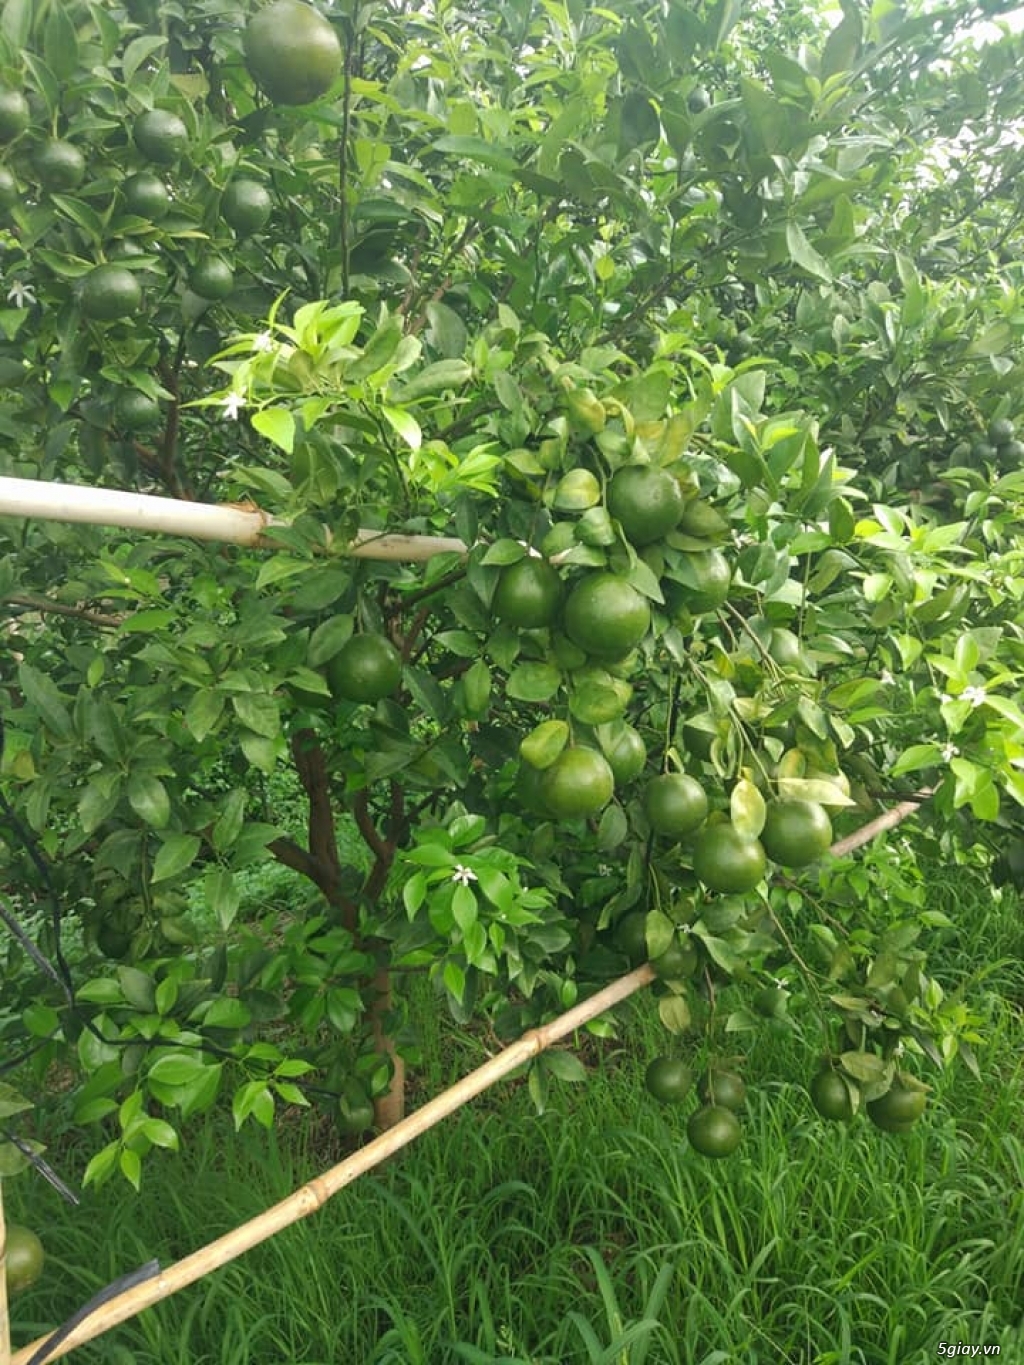 Bán trái cây vườn nhà - Quýt Đường - Cam Xoàn - Cam Cara - 1